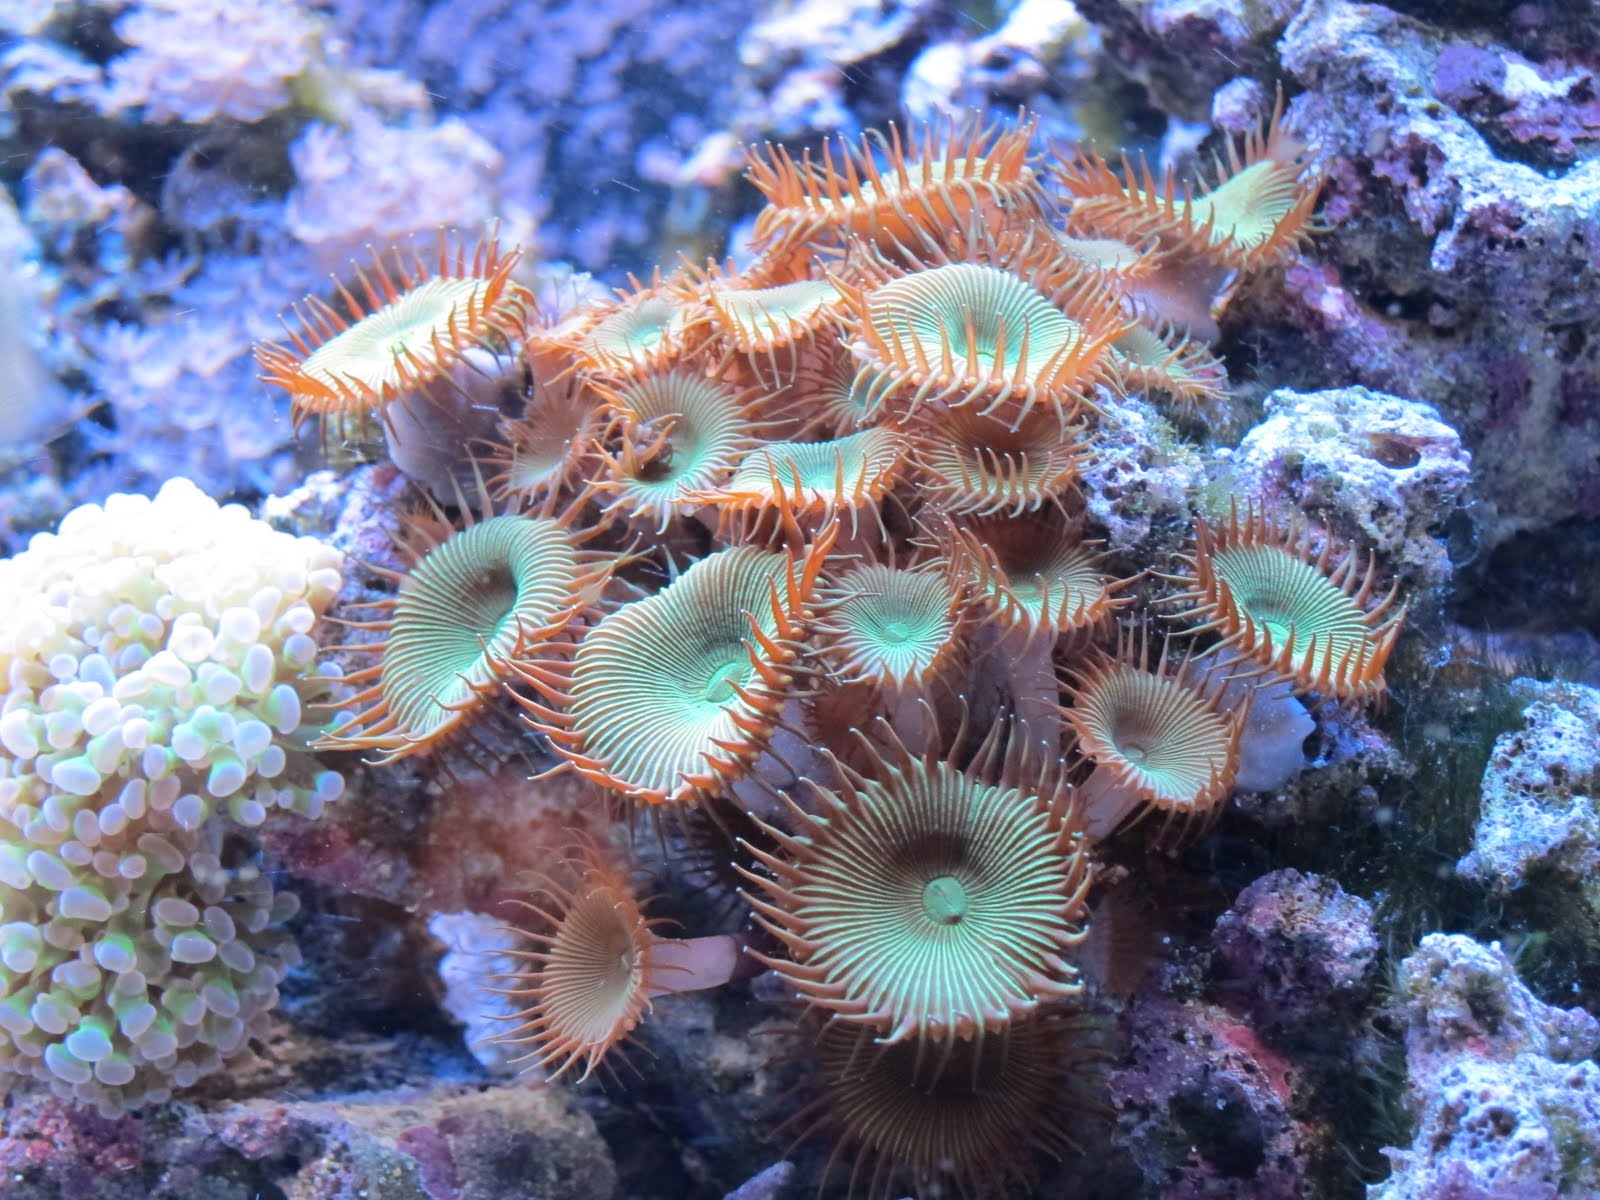 Trials and Tribulations of a Reef Aquarium: July 2011